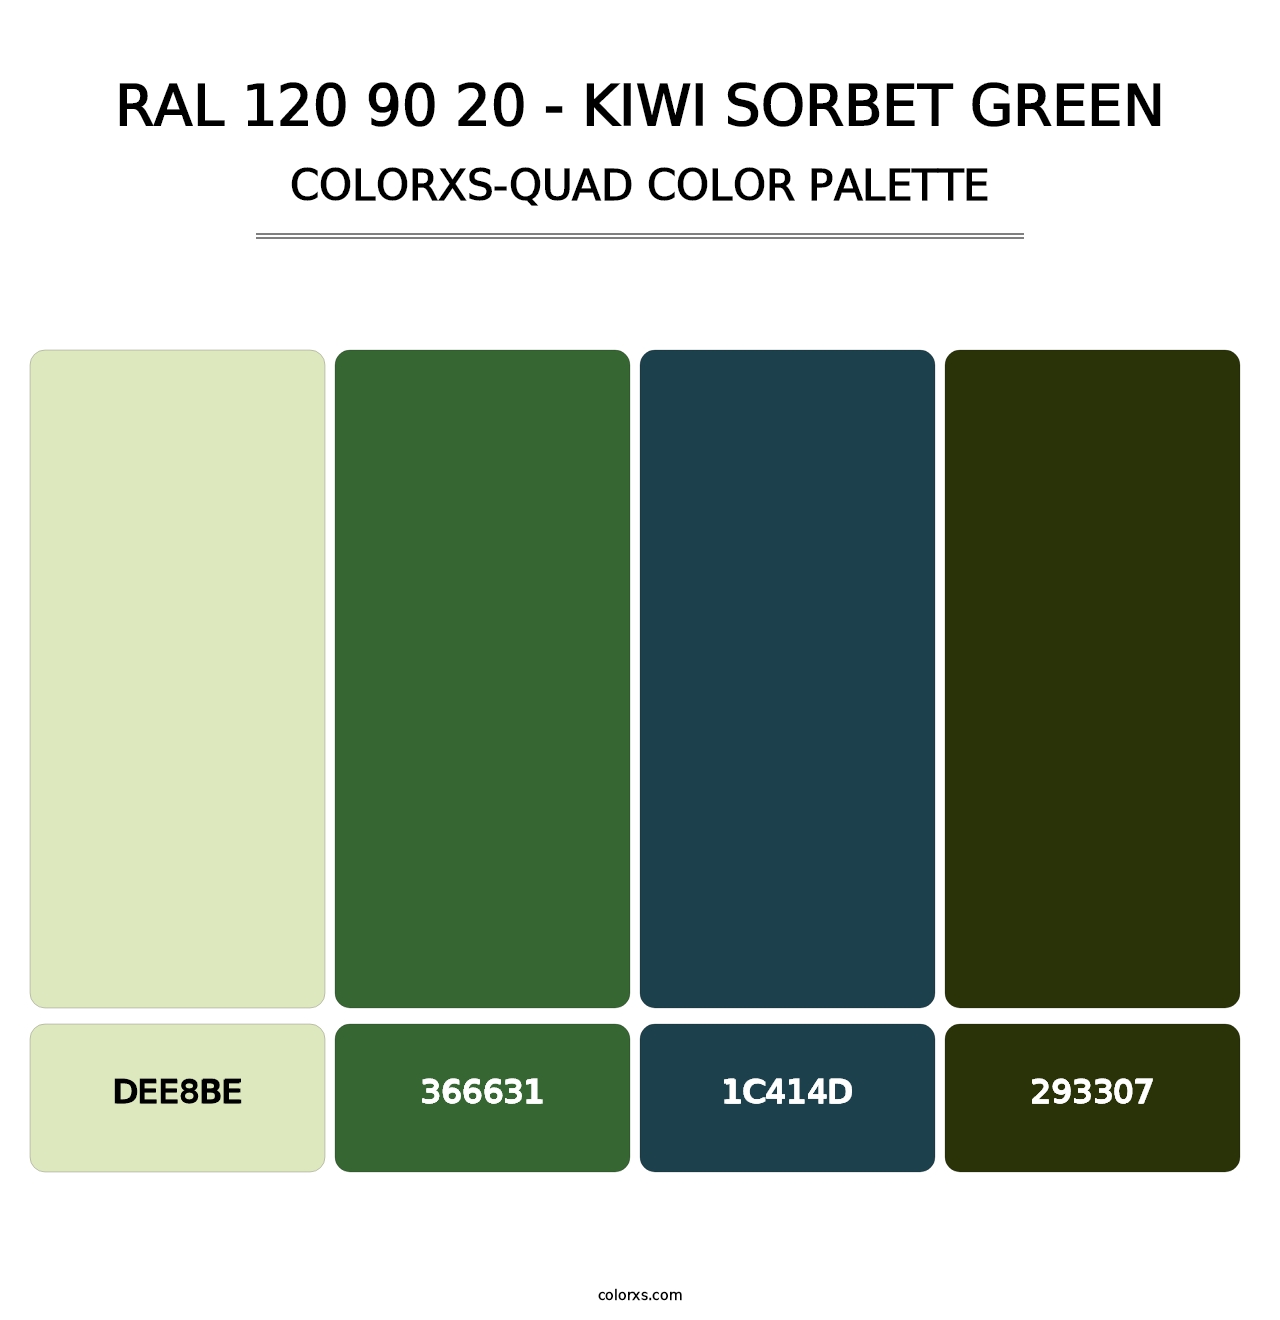 RAL 120 90 20 - Kiwi Sorbet Green - Colorxs Quad Palette